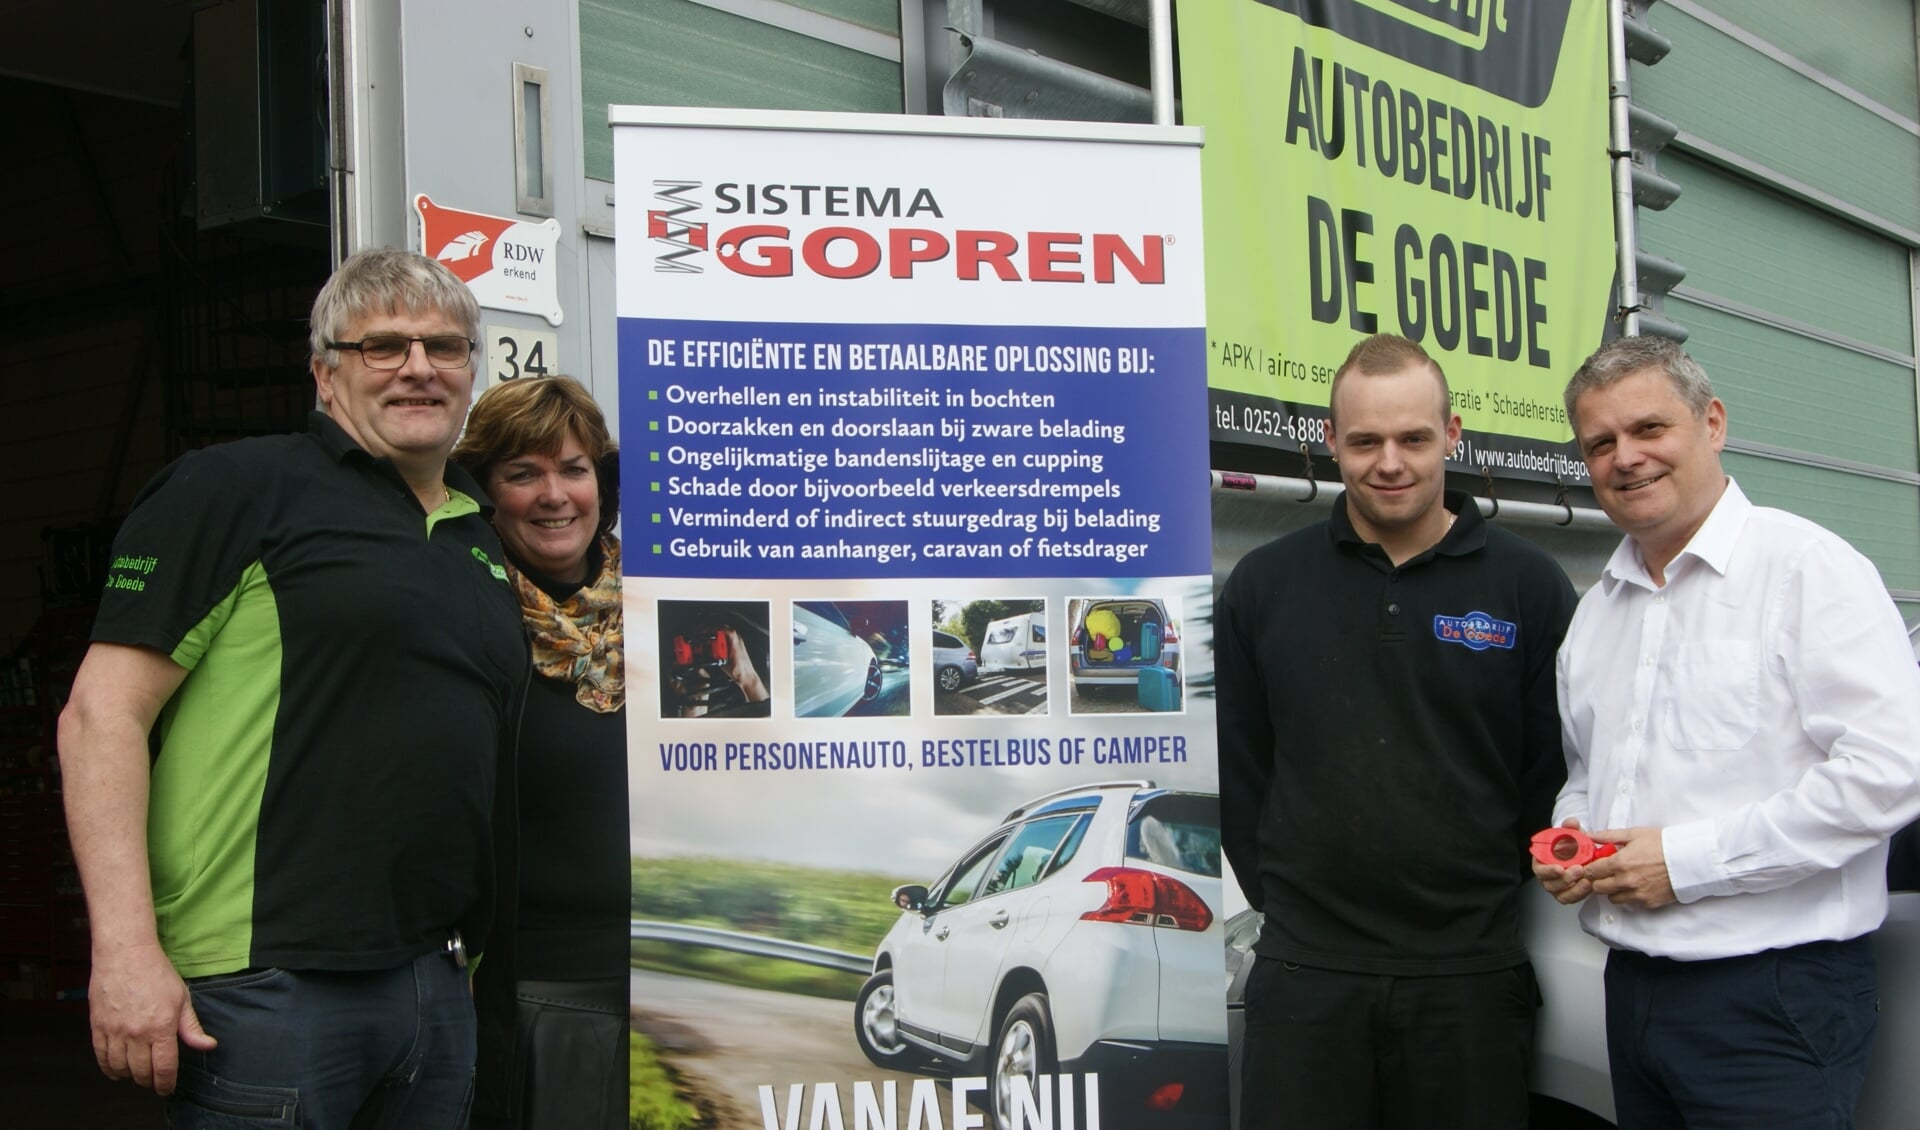 Het team van Autobedrijf De Goede. 